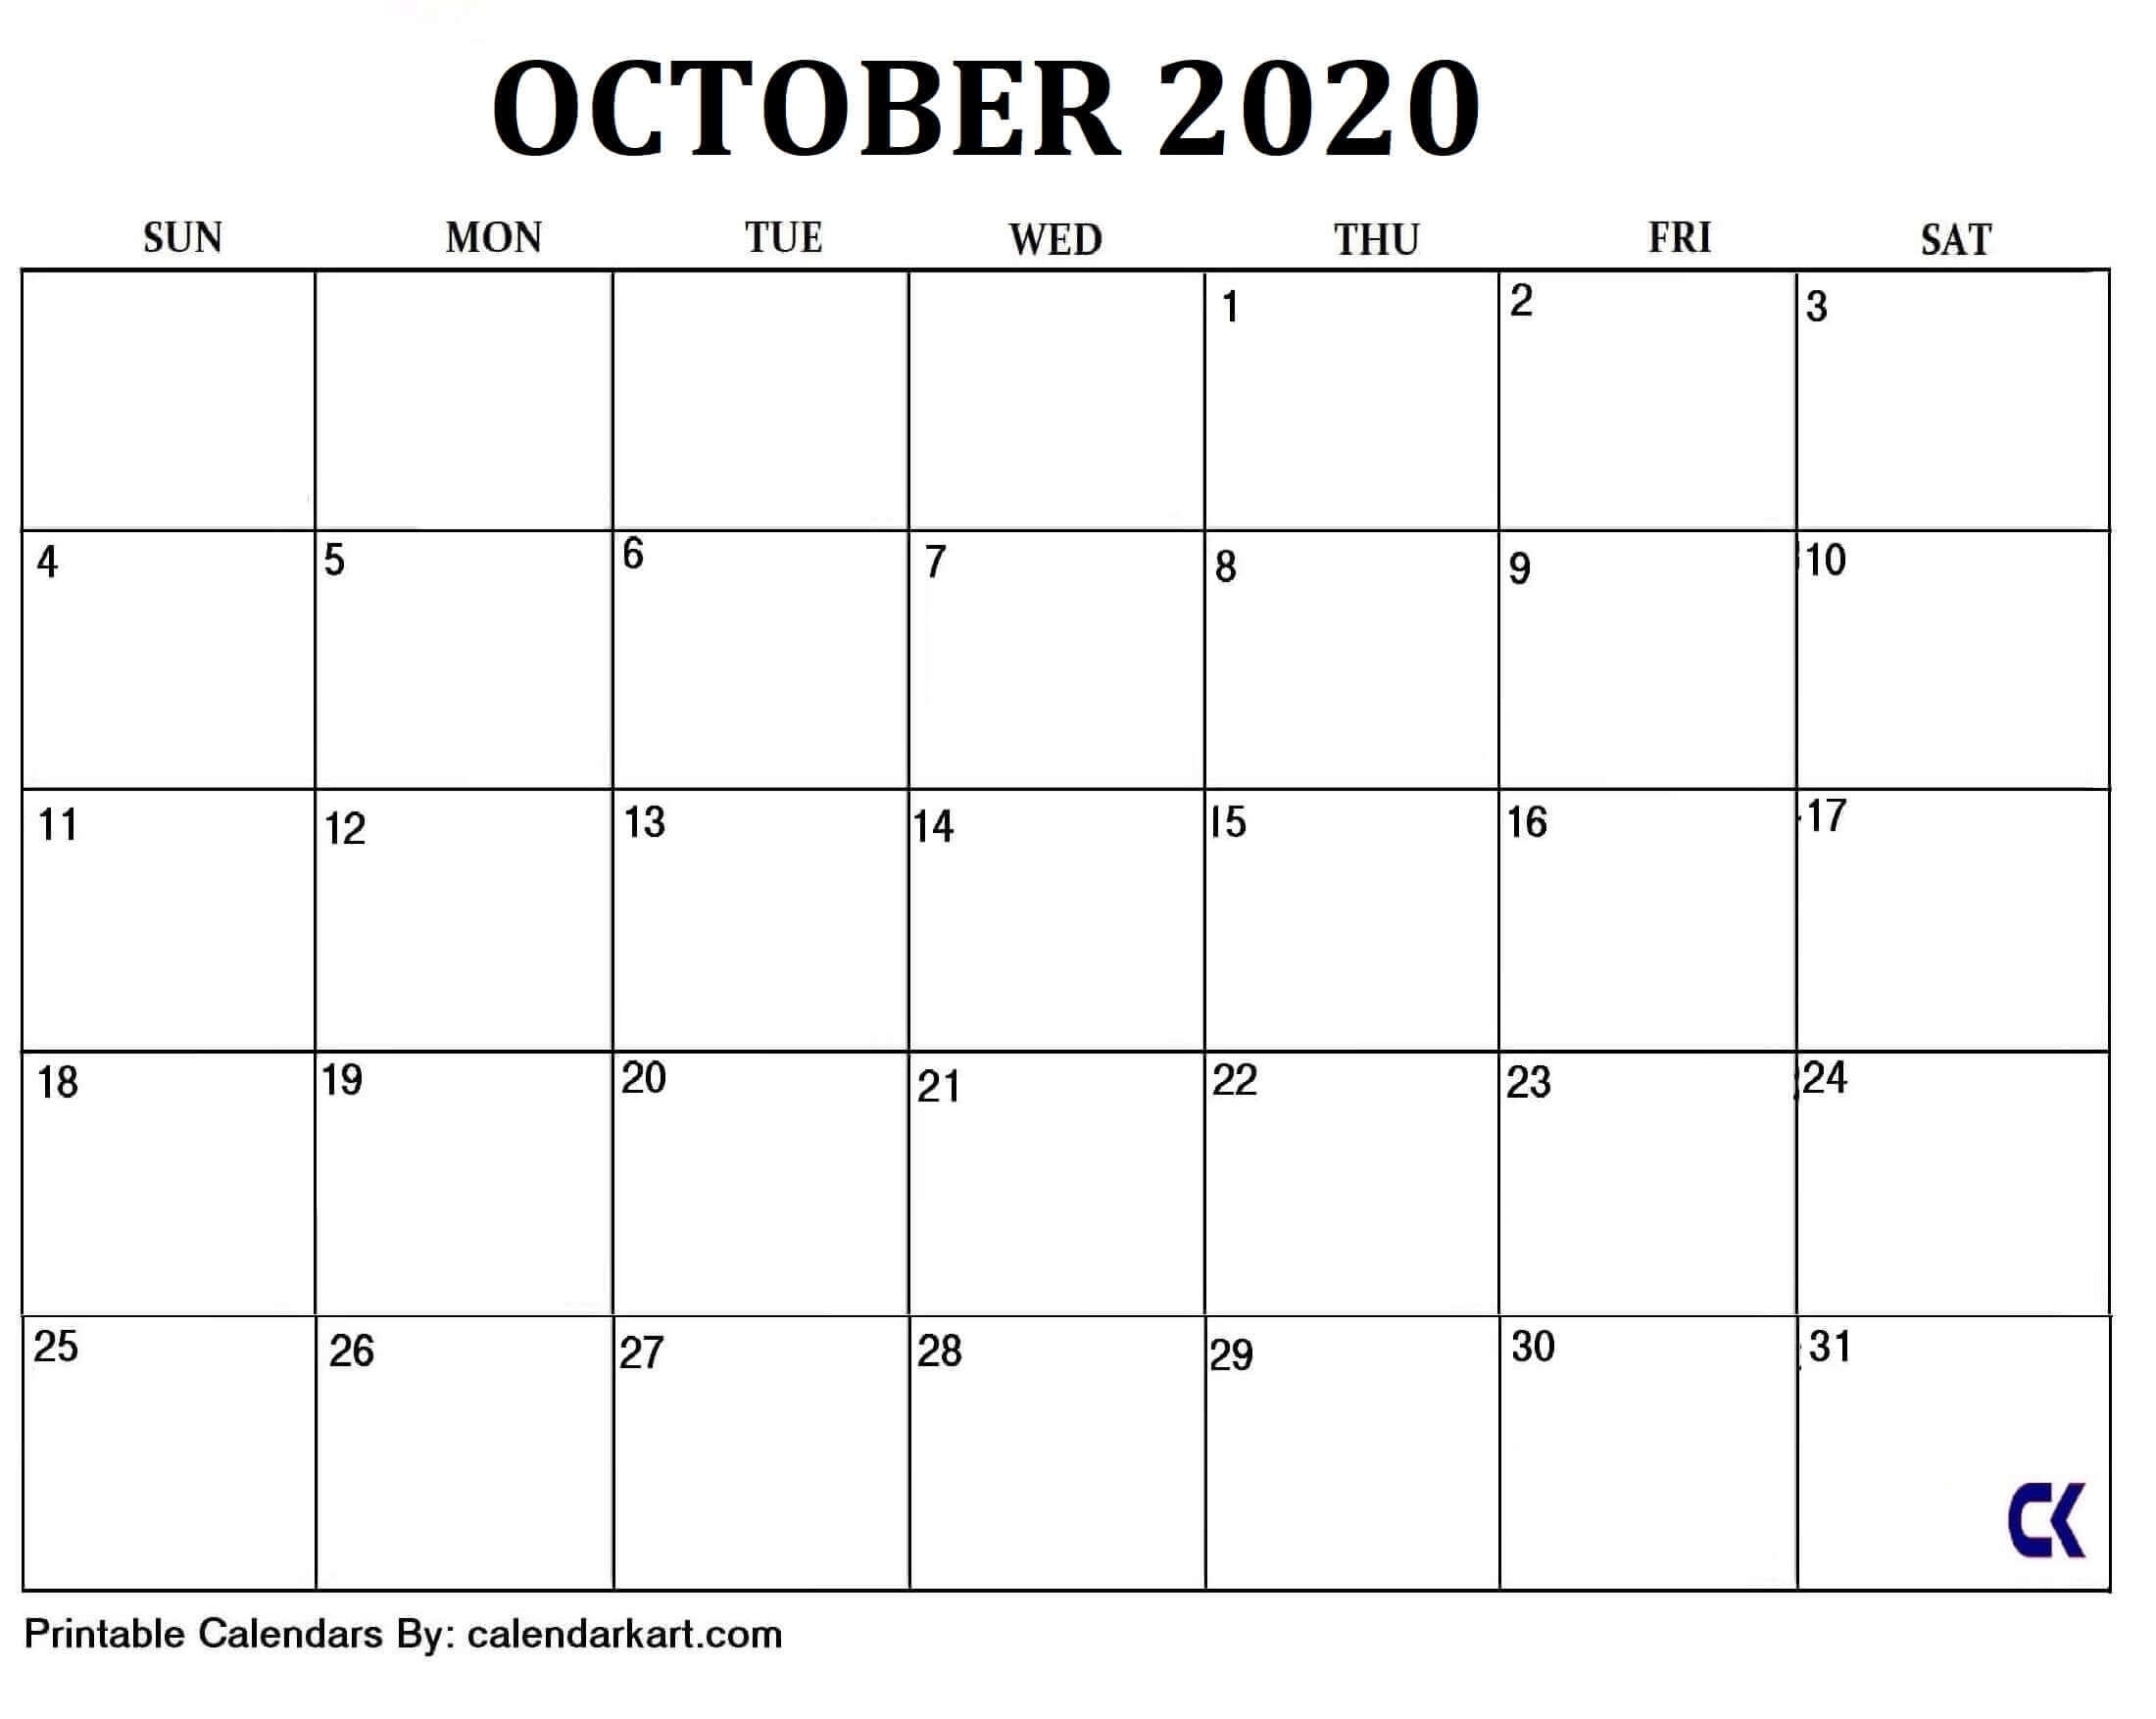 6 Cute And Elegant Free Printable October 2020 Calendar